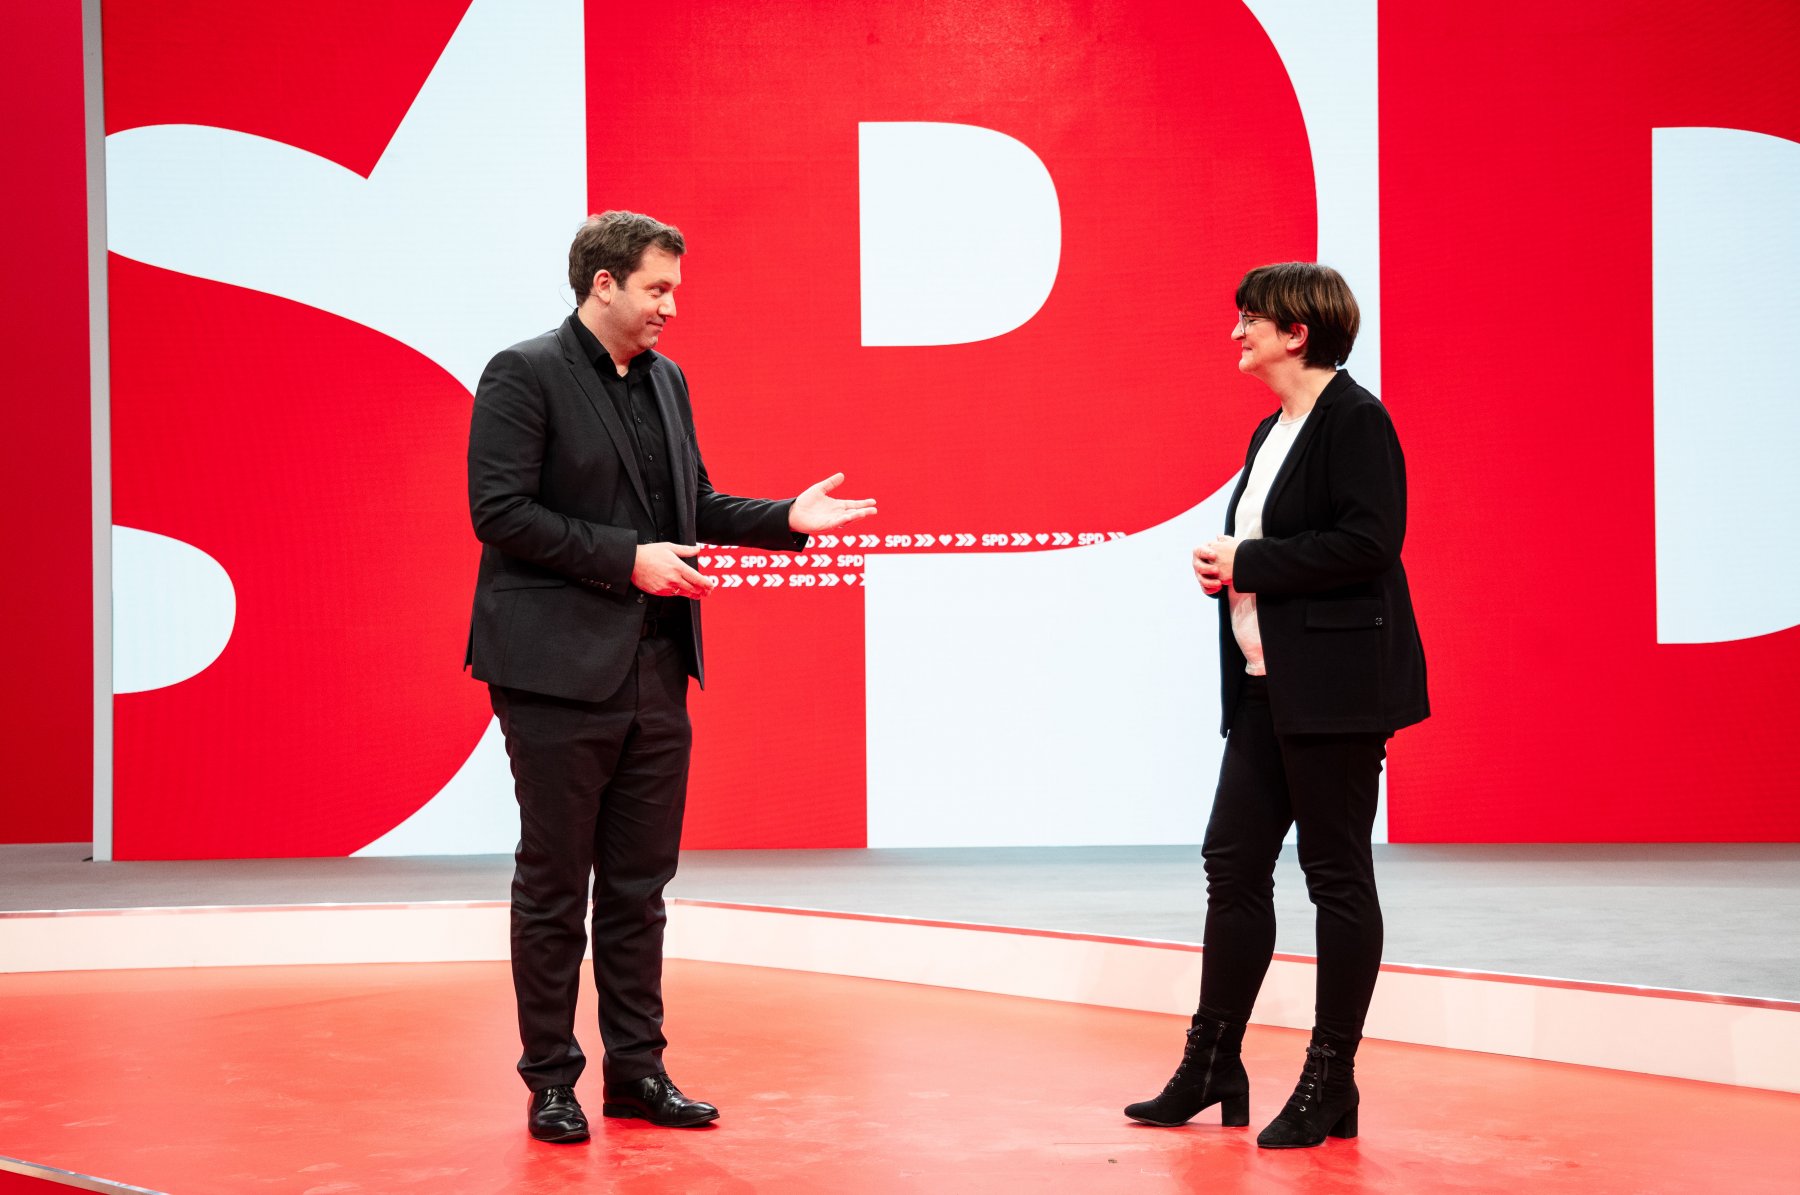 Neue SPD-Doppelspitze Esken und Klingbeil: Wahnsinn, was die SPD gerade alles an historischen Momenten erlebt